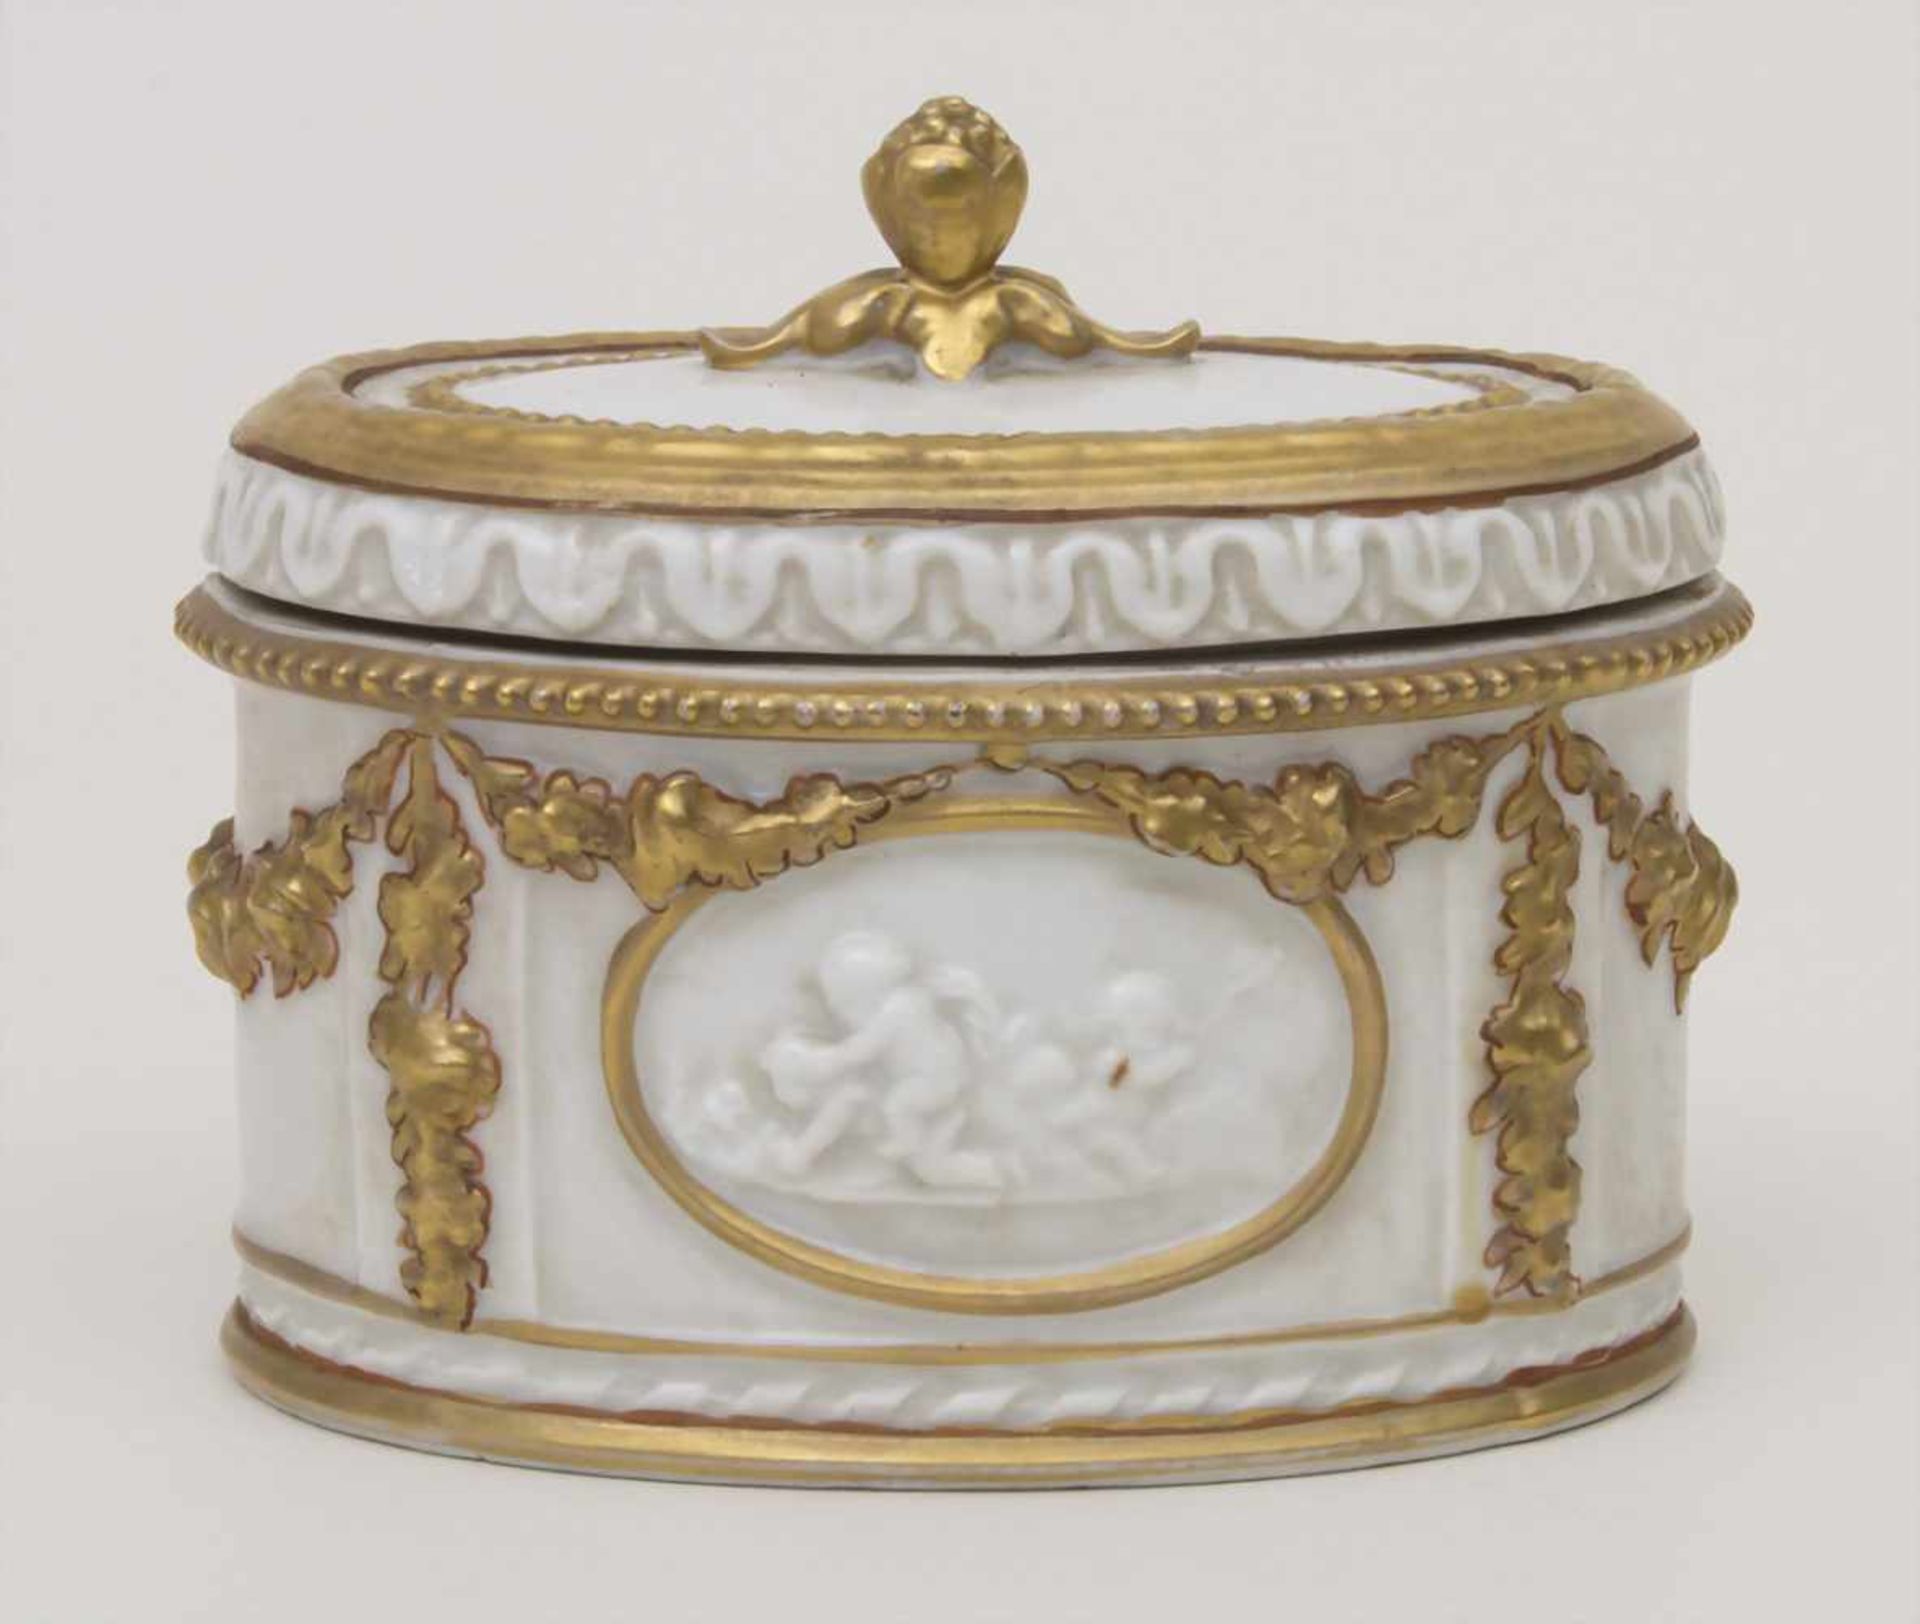 Deckeldose / A lidded box, Älteste Volkstedt, um 1900Material: Porzellan, goldstaffiert, glasiert,